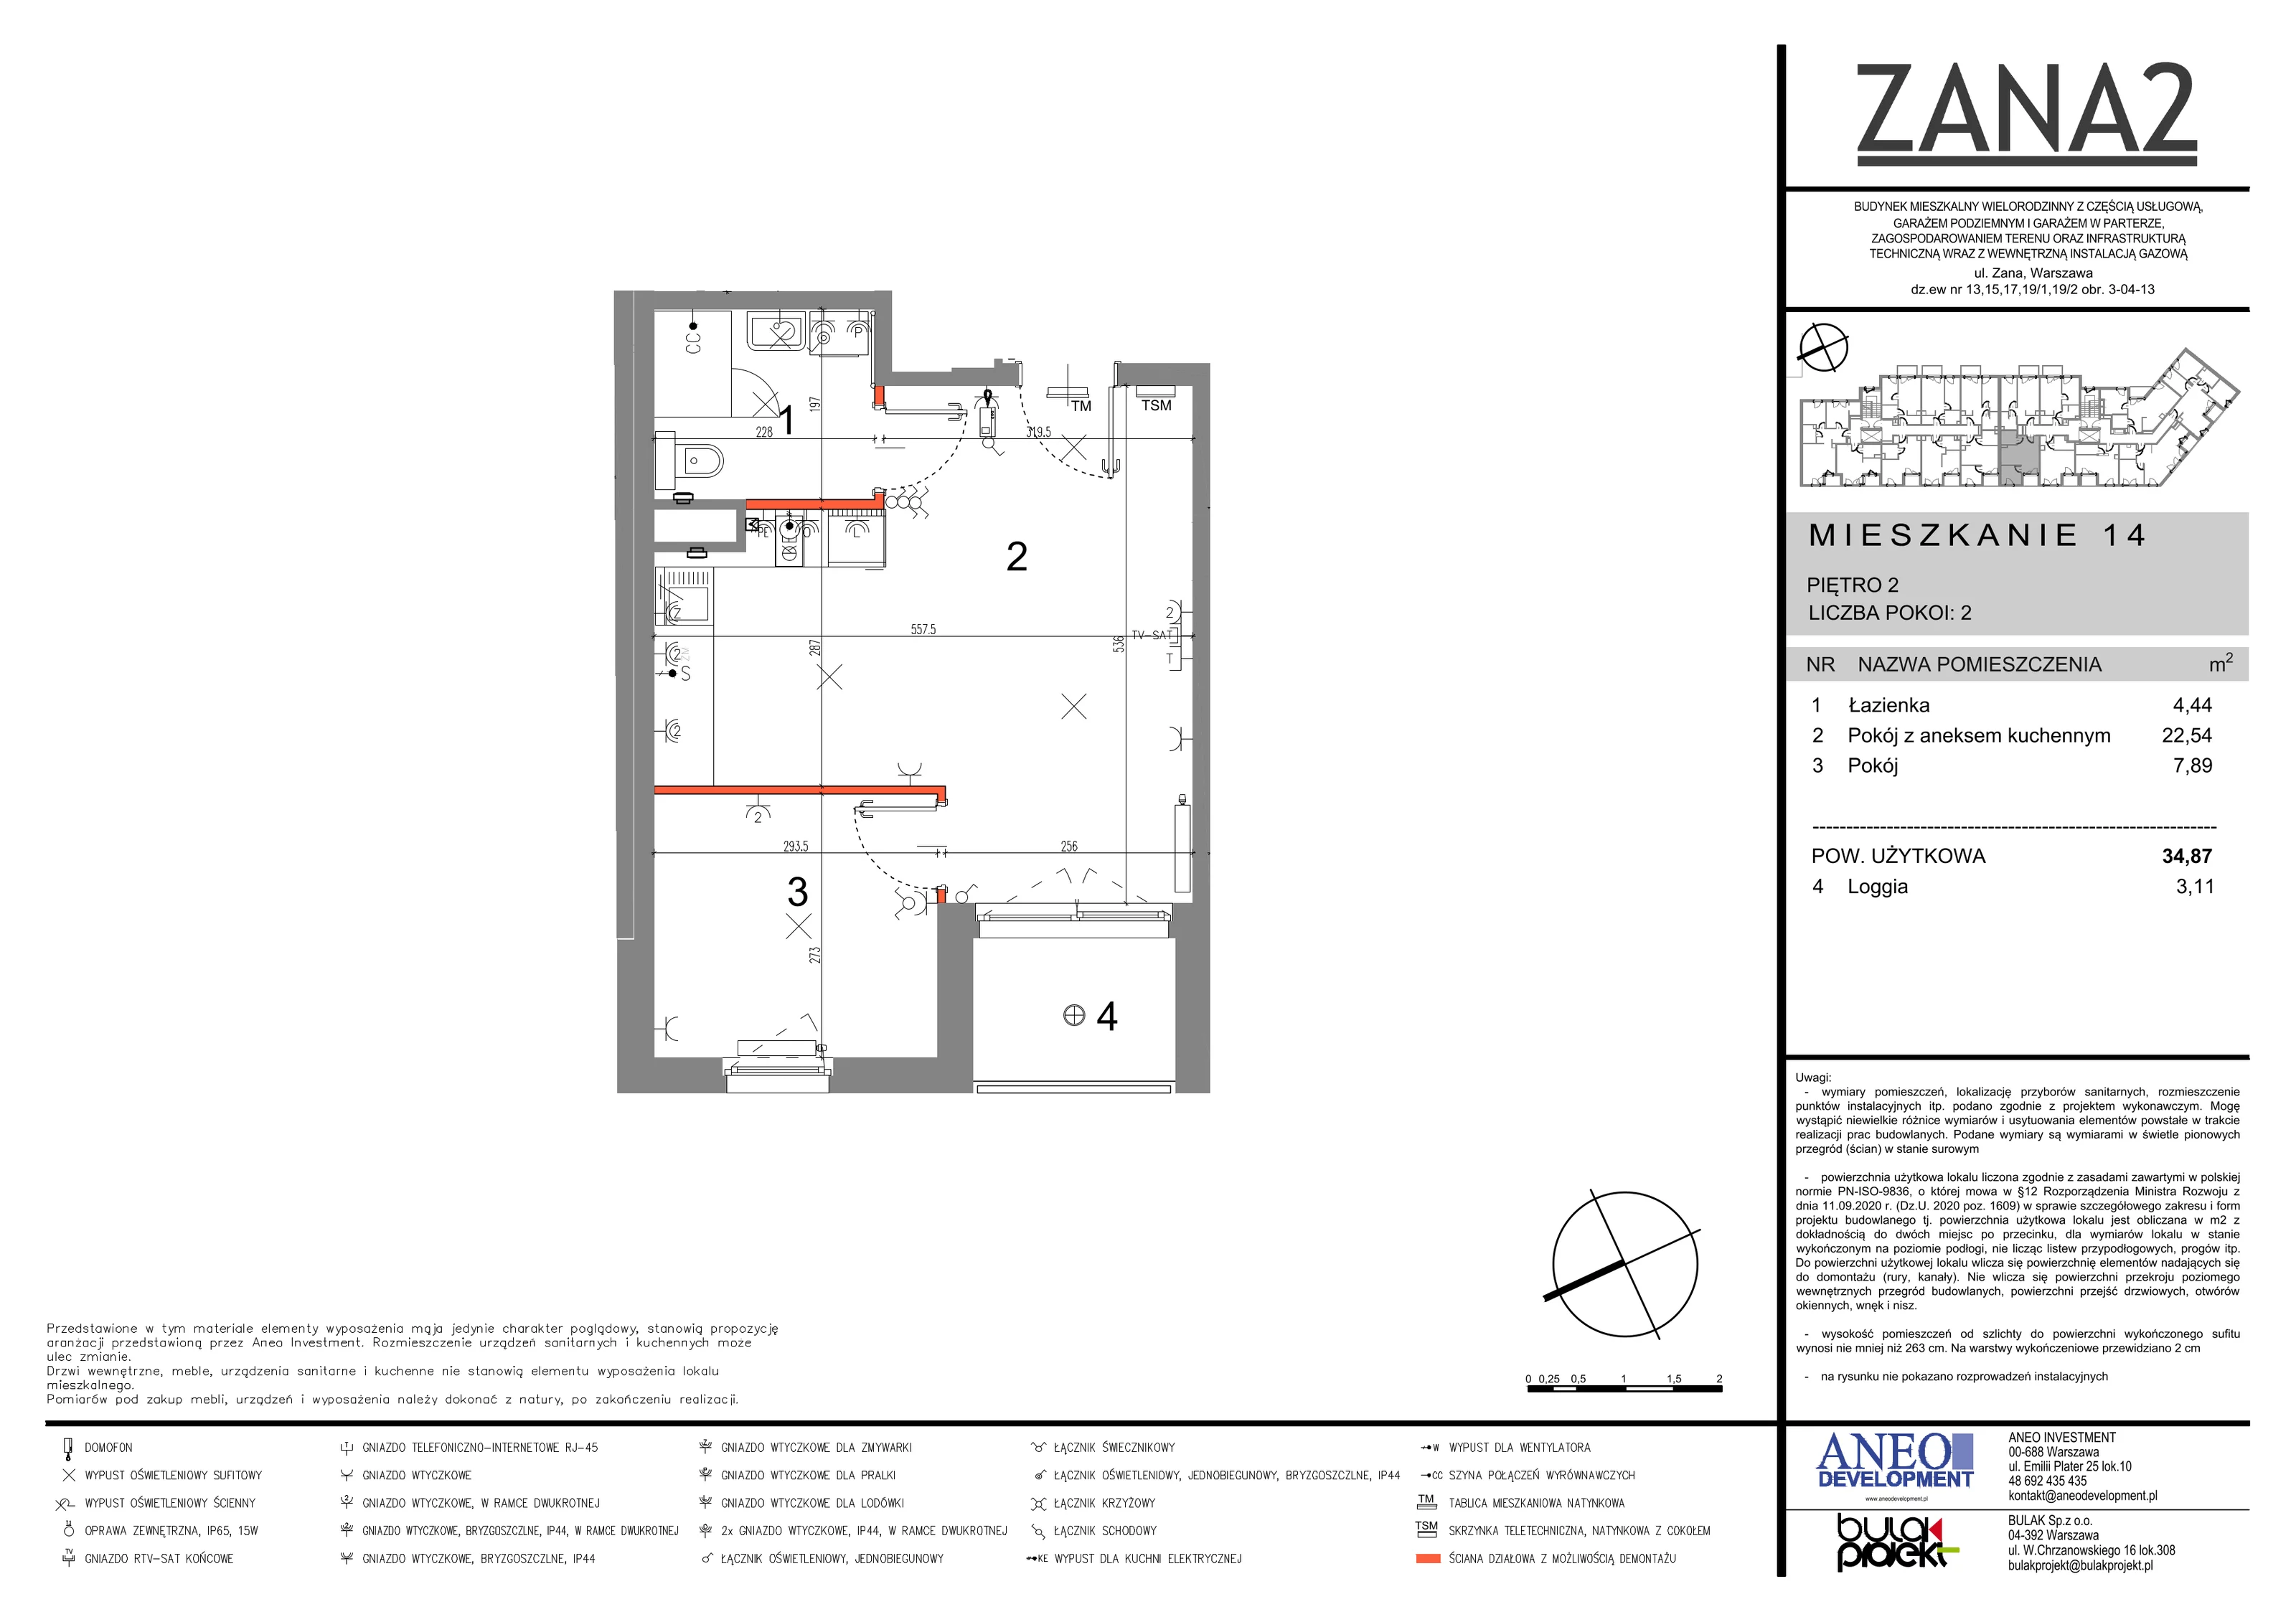 Mieszkanie 34,87 m², piętro 2, oferta nr 14, Zana 2, Warszawa, Praga Południe, Gocławek, ul. Tomasza Zana